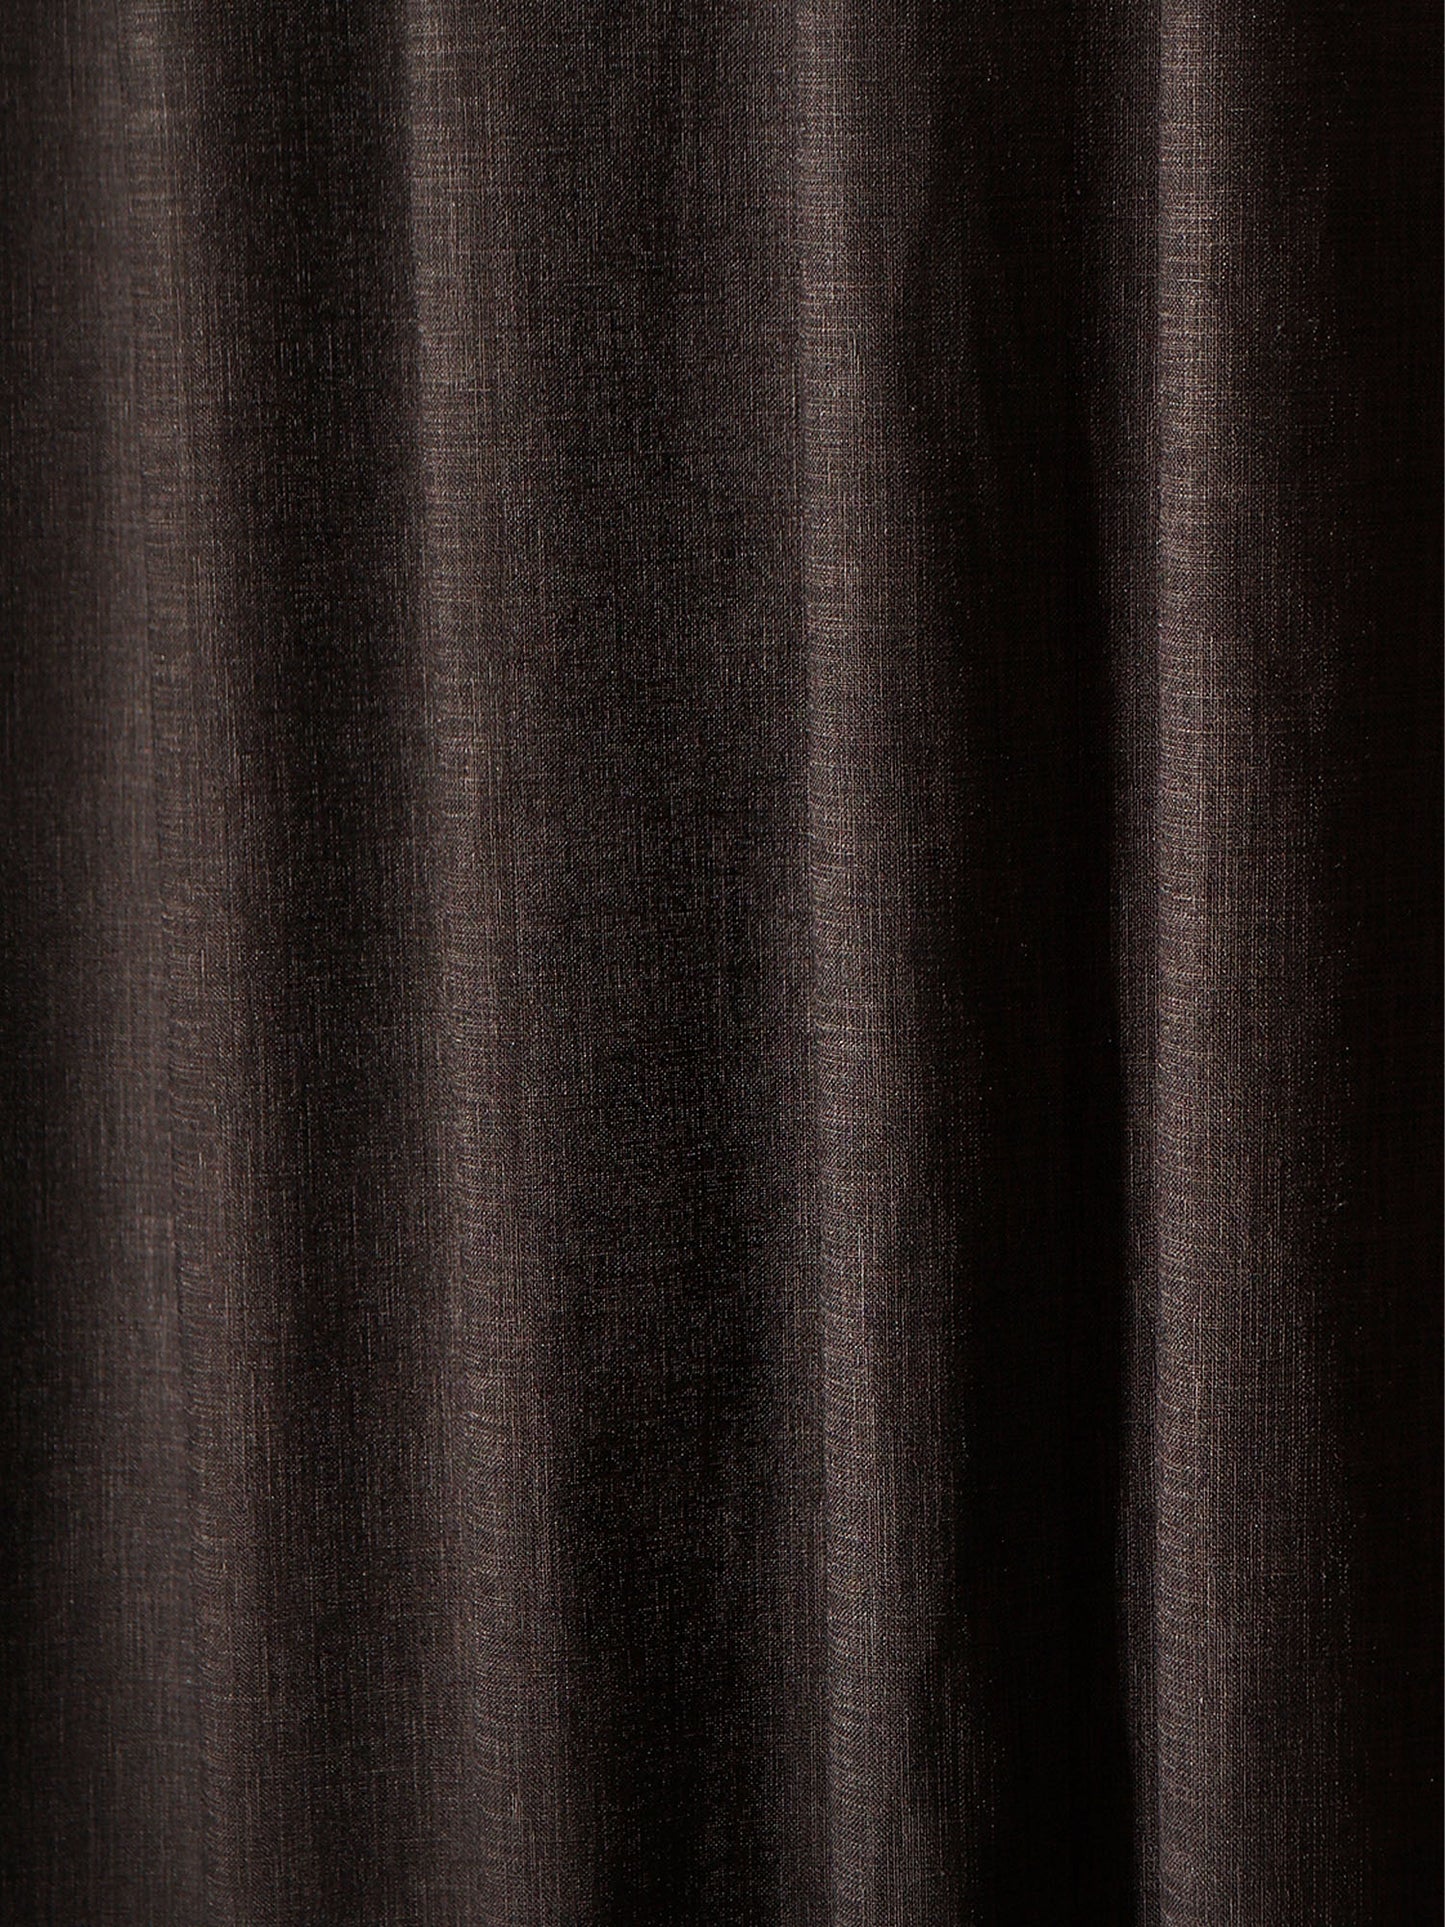 Window Curtain Polyester Blend Basket Weave Dark Grey - 50" X 60"